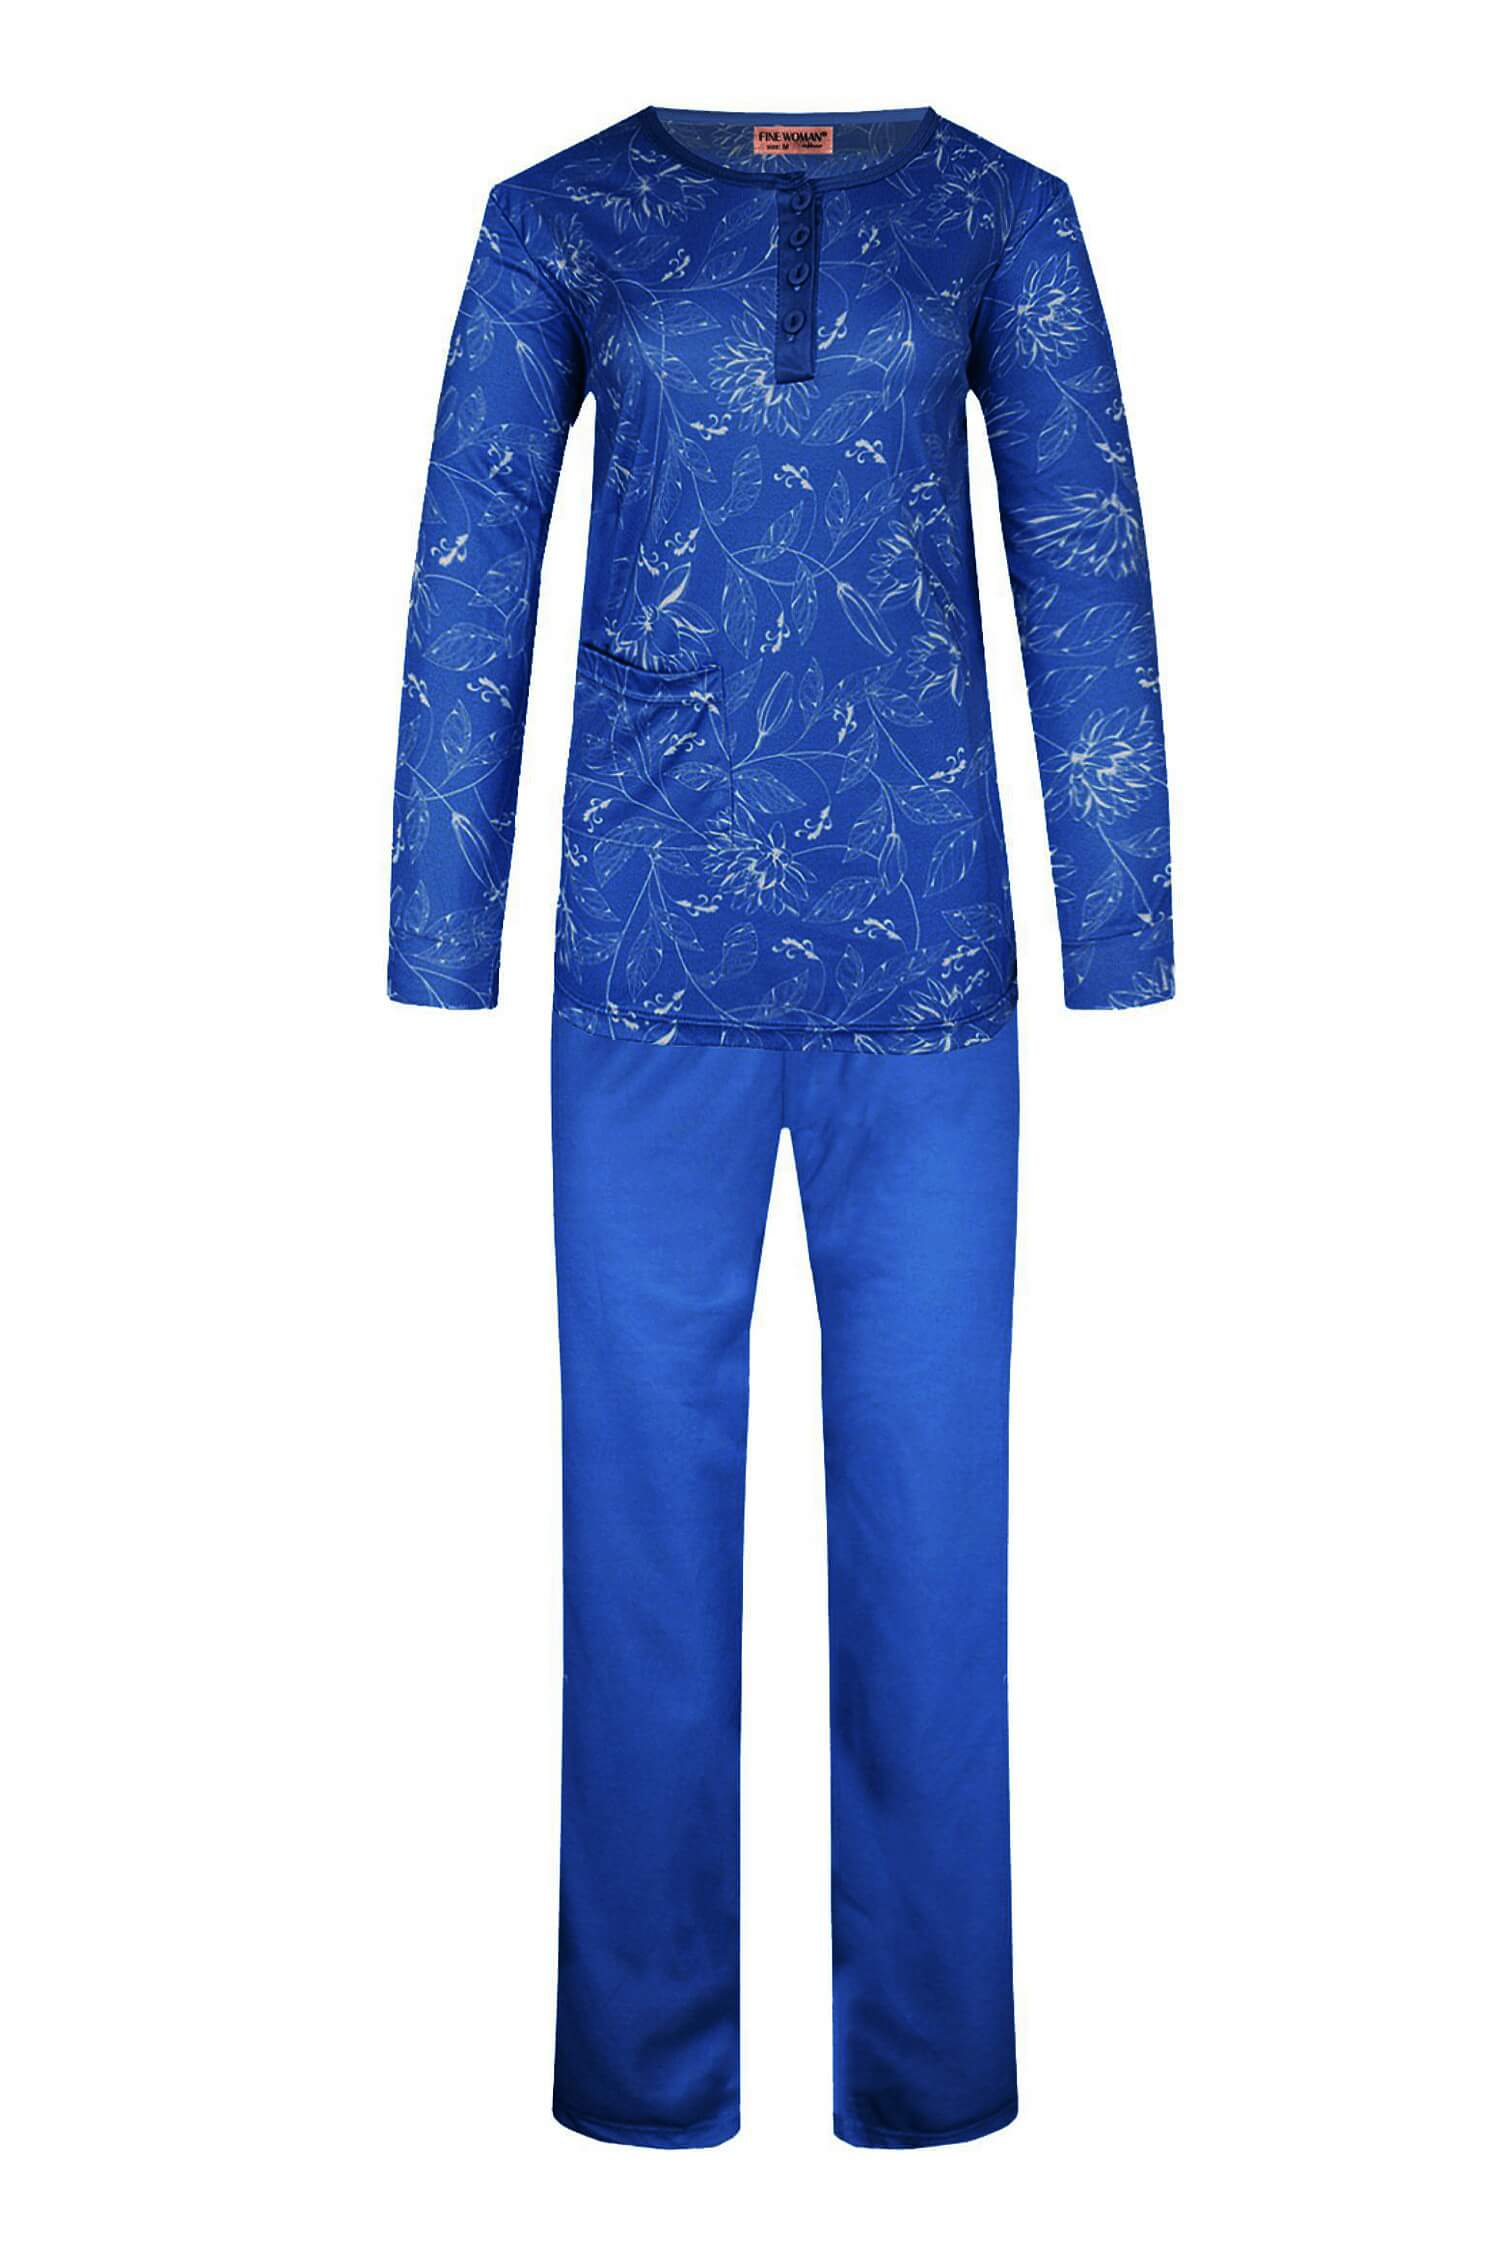 Sára dámské pyžamo dlouhý rukáv 2299 M tmavě modrá